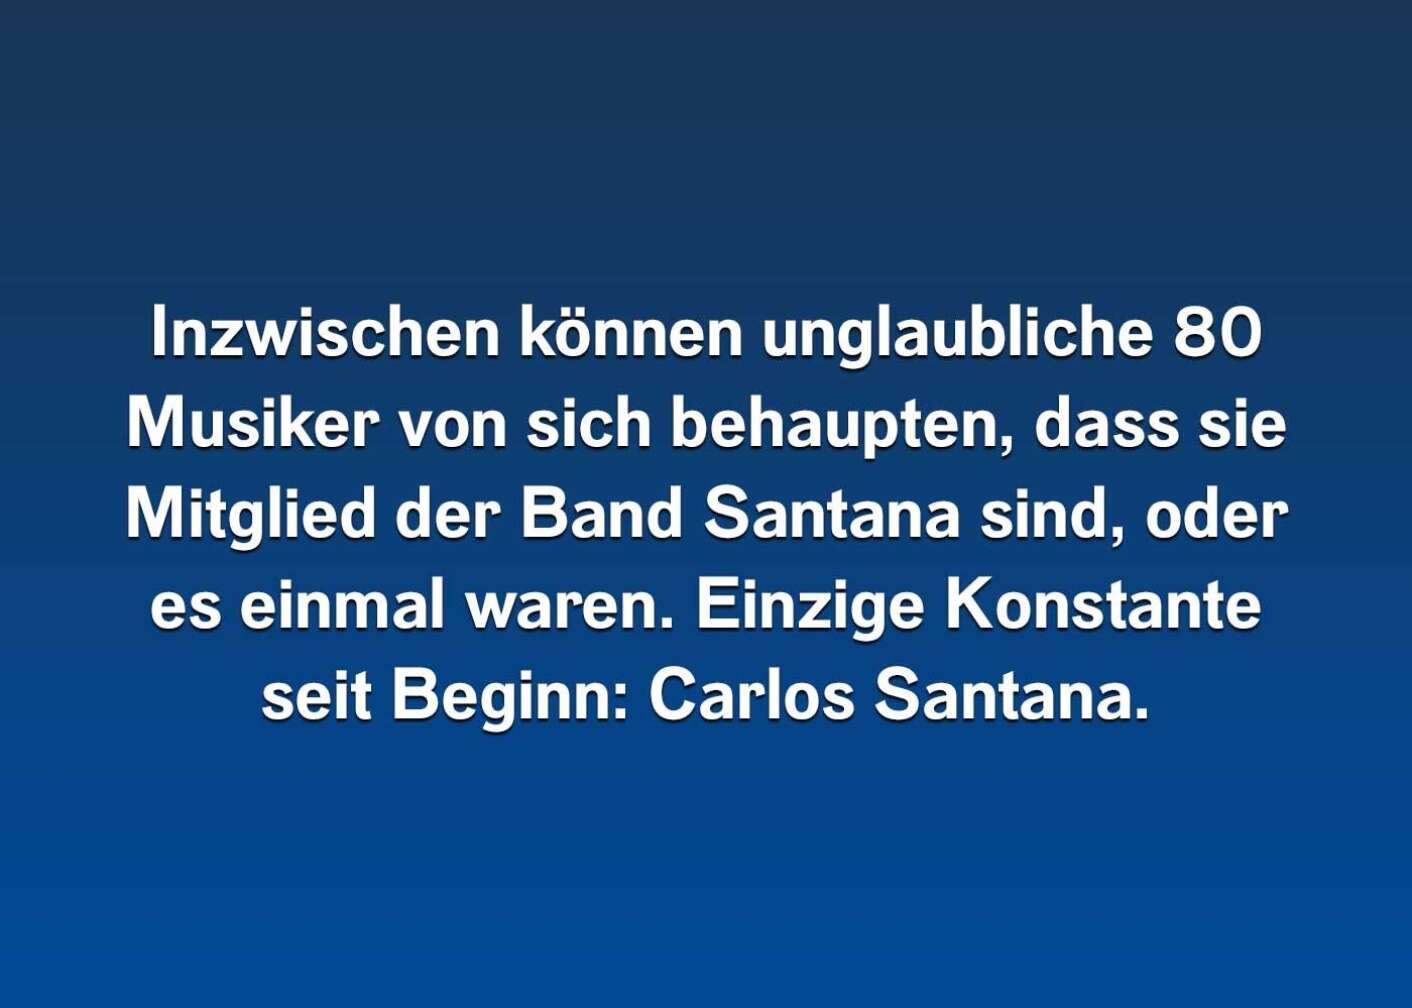 6 Fakten über Carlos Santana